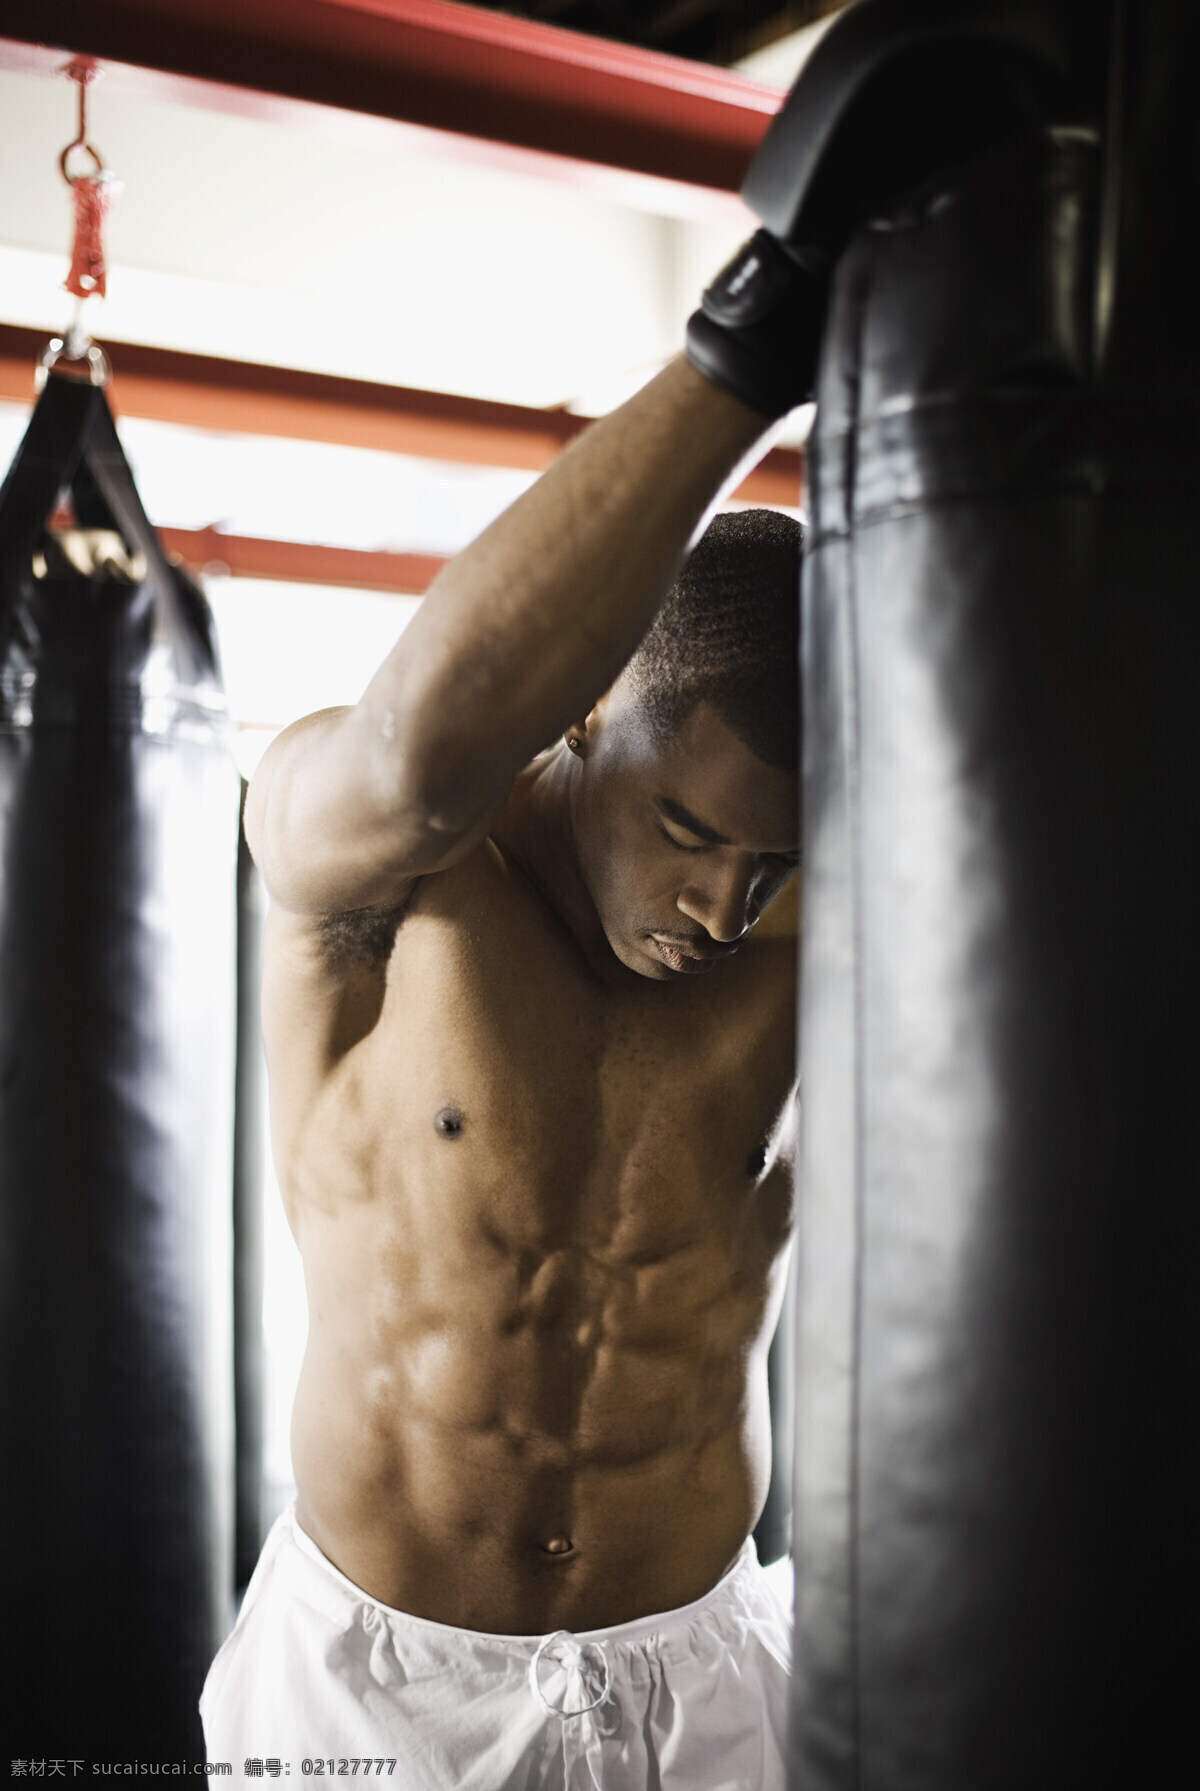 拳击 运动员 沙袋 拳击手 黑人 男子 体育运动项目 武术 功夫 搏击 格斗 生活人物 人物图片